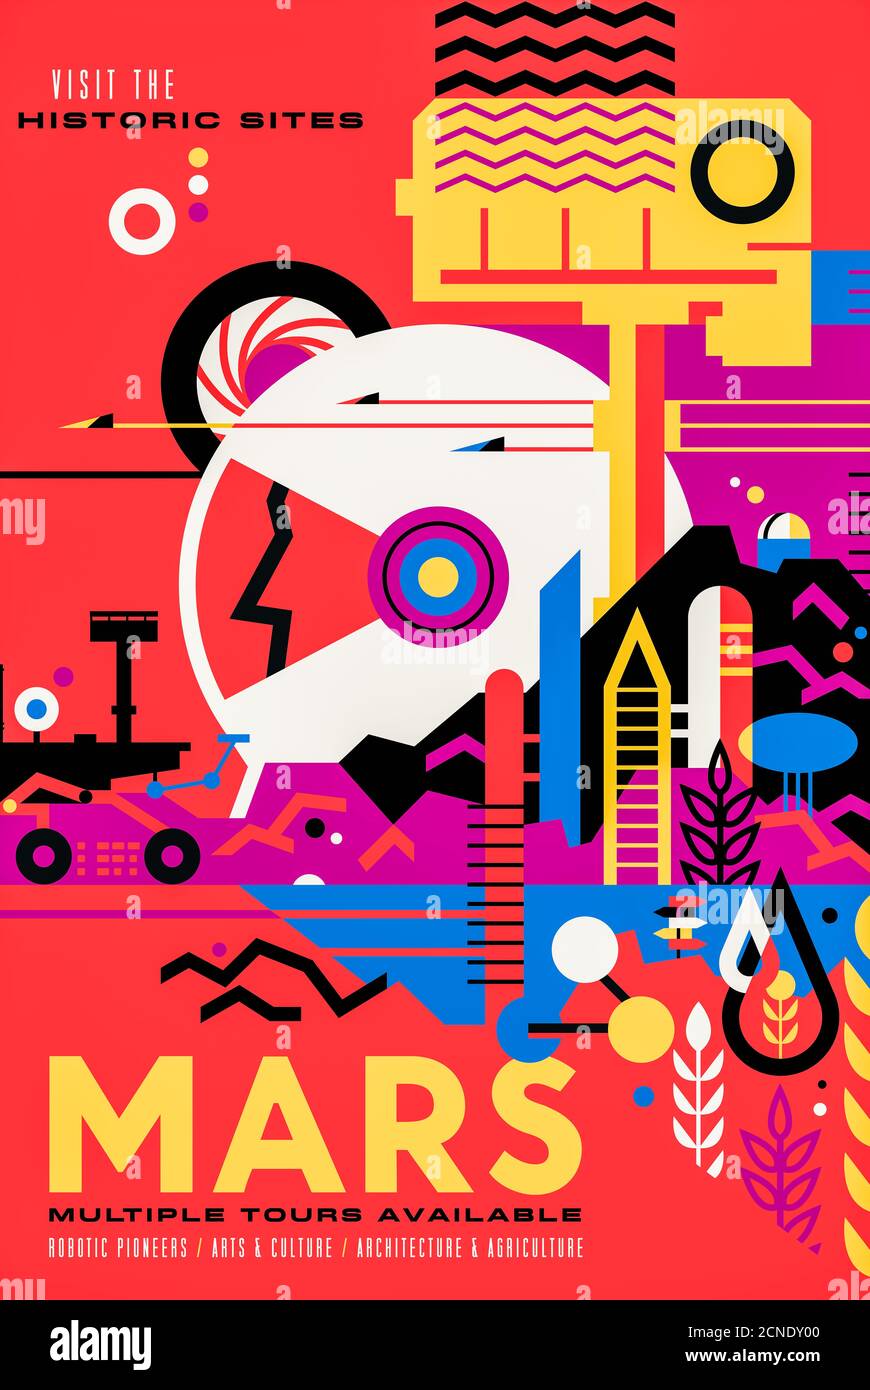 Marte: Visiones de los futuros carteles de viajes espaciales creados por el Laboratorio de Propulsión a Chorro de la NASA. Foto de stock